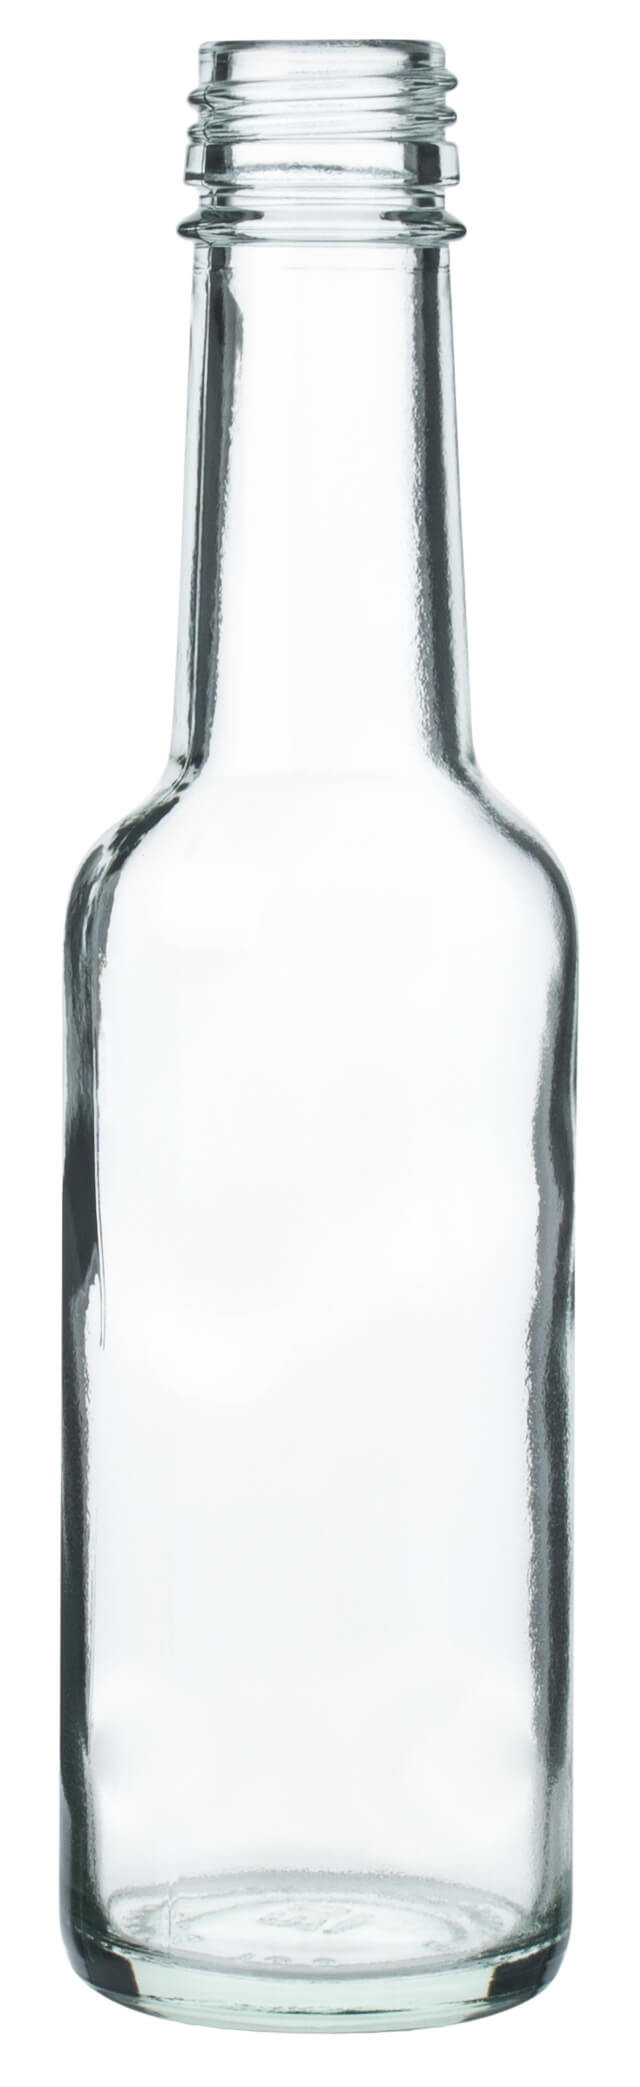 Glasflasche Geradhals klar - 200ml